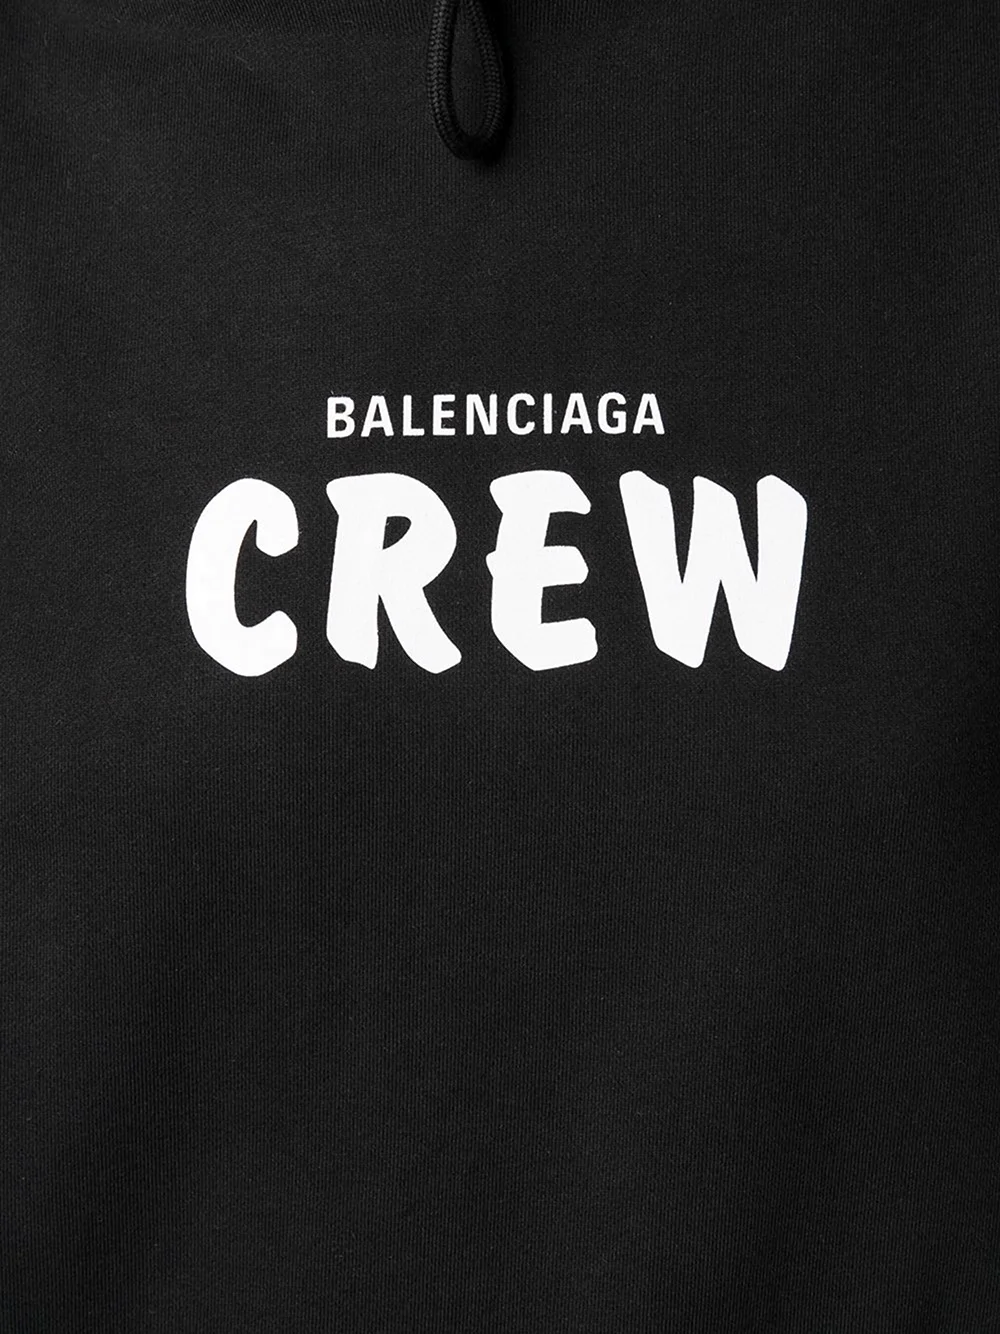 Баленсиага Crew футболка